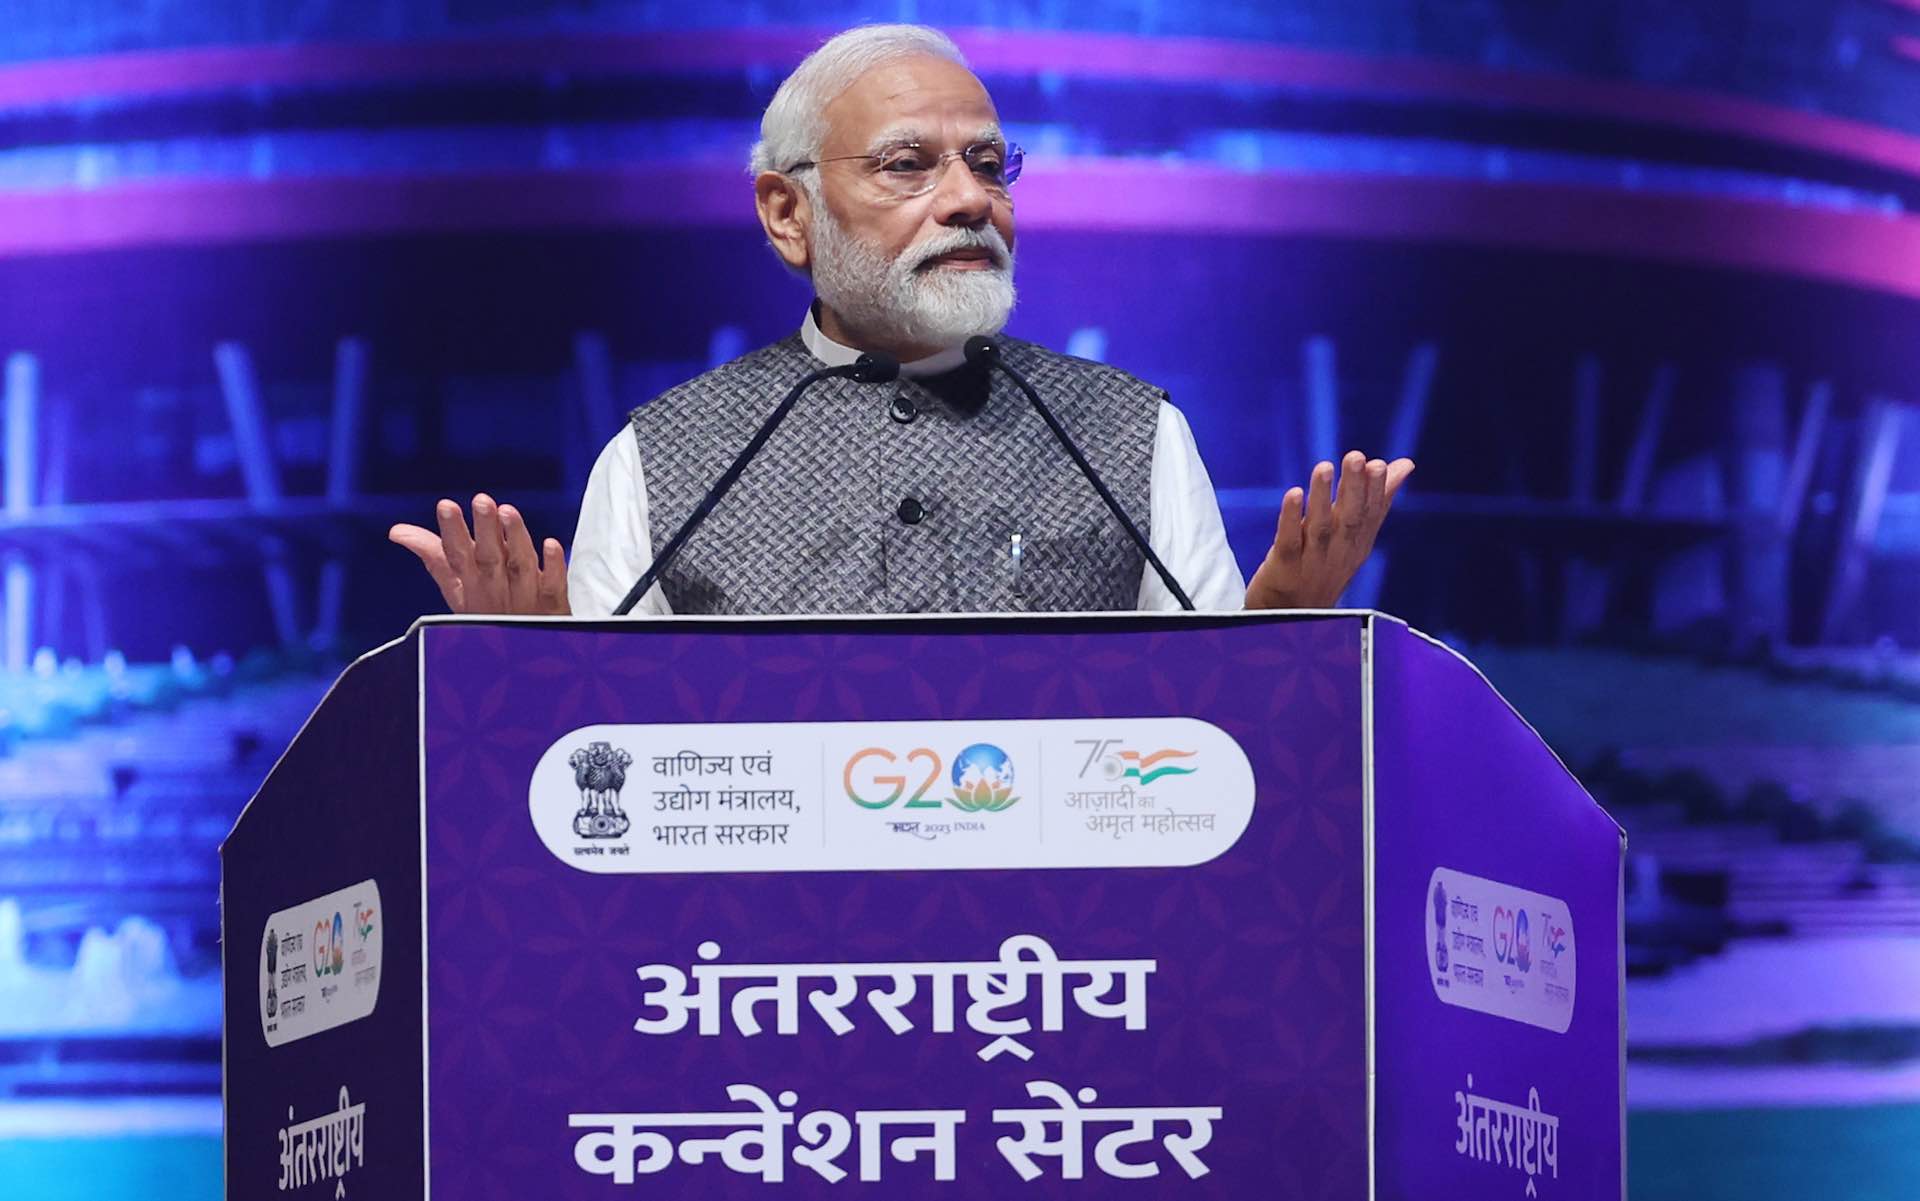 رئيس وزراء الهند ناريندرا مودي يدعم الرؤية الوطنية لبلاده بافتتاح المركز الدولي للمعارض والمؤتمرات بقيمة 329 مليون دولار